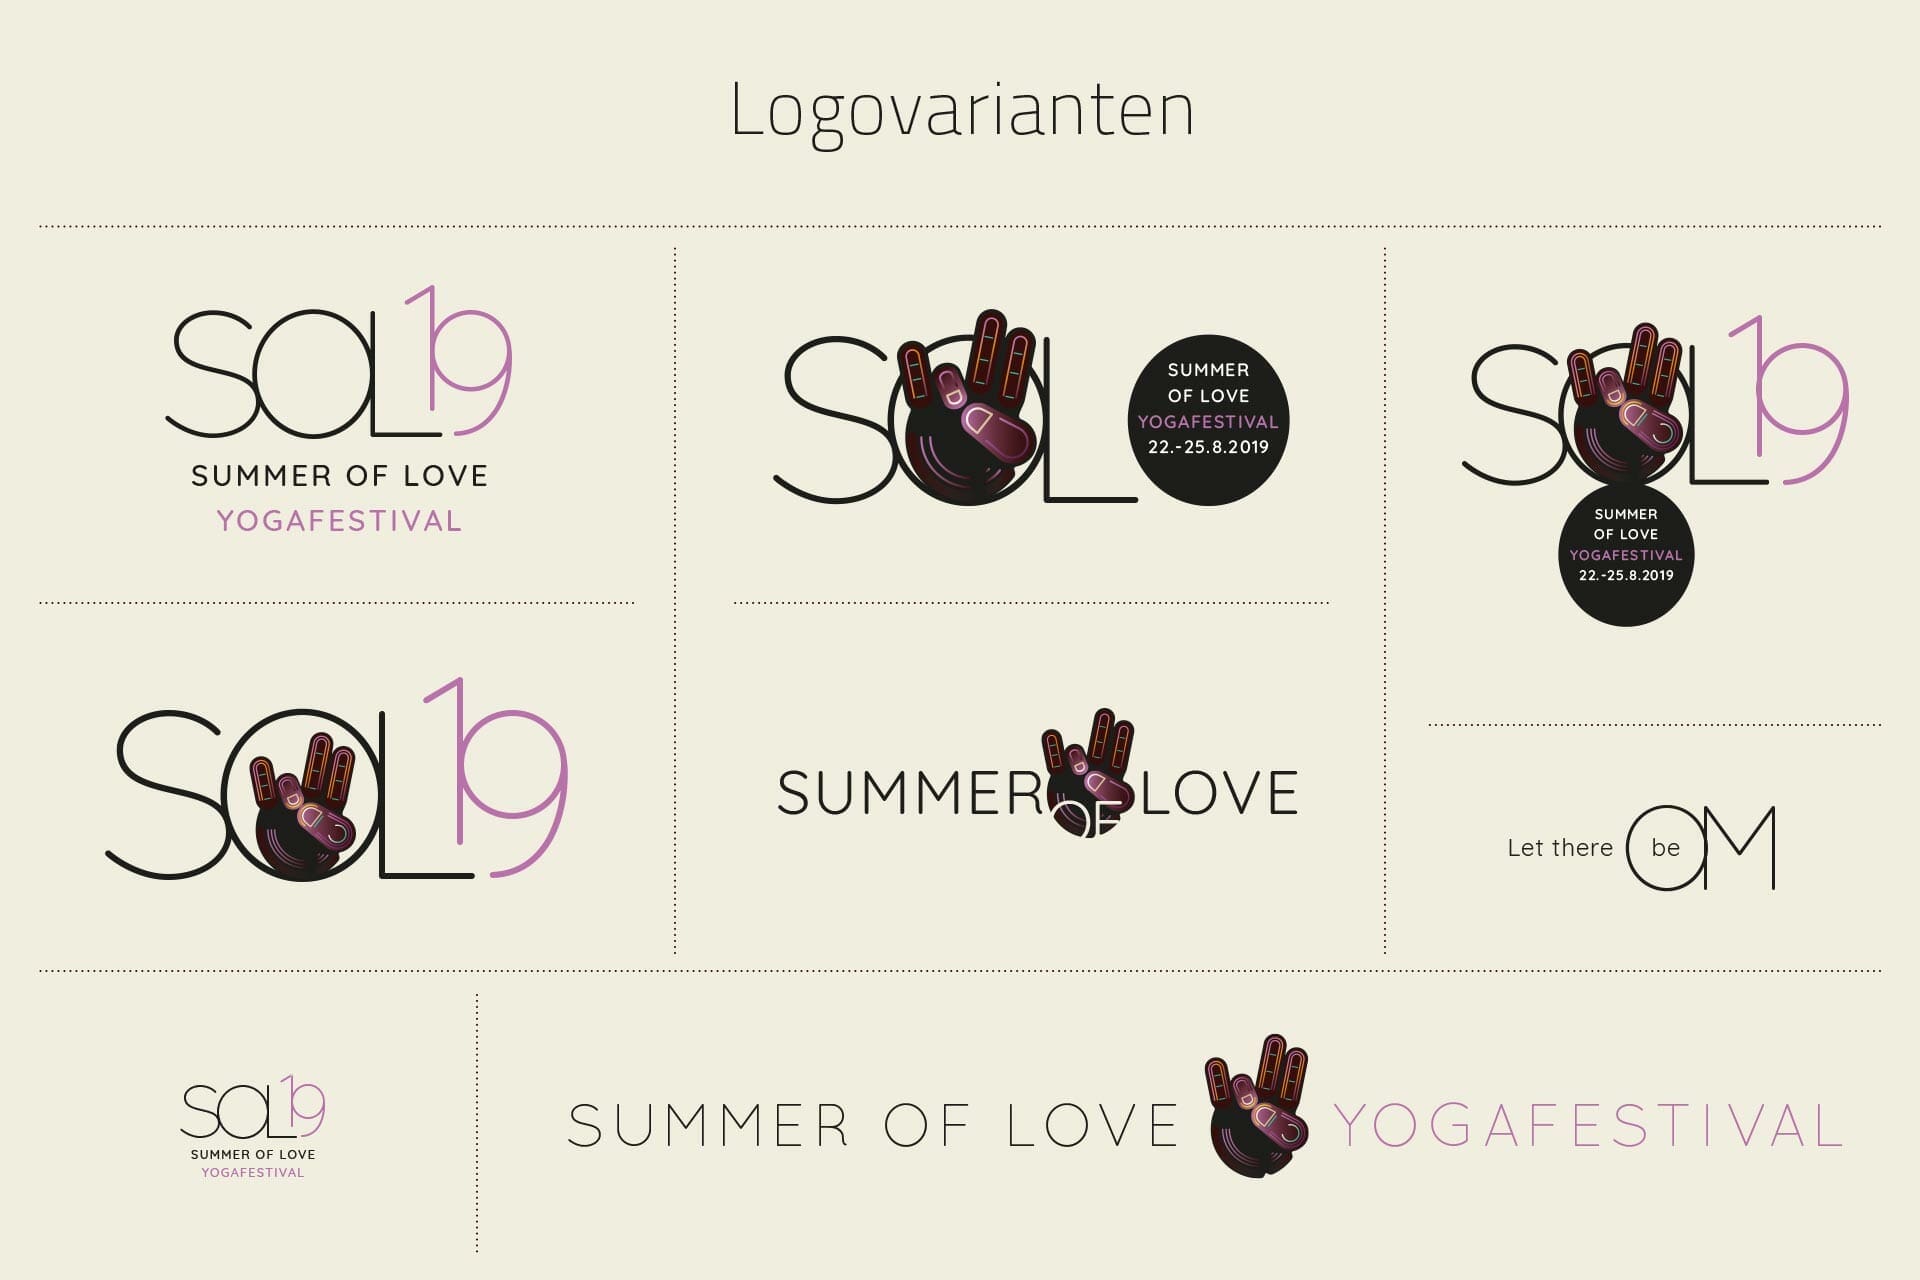 SOL19 Logovarianten